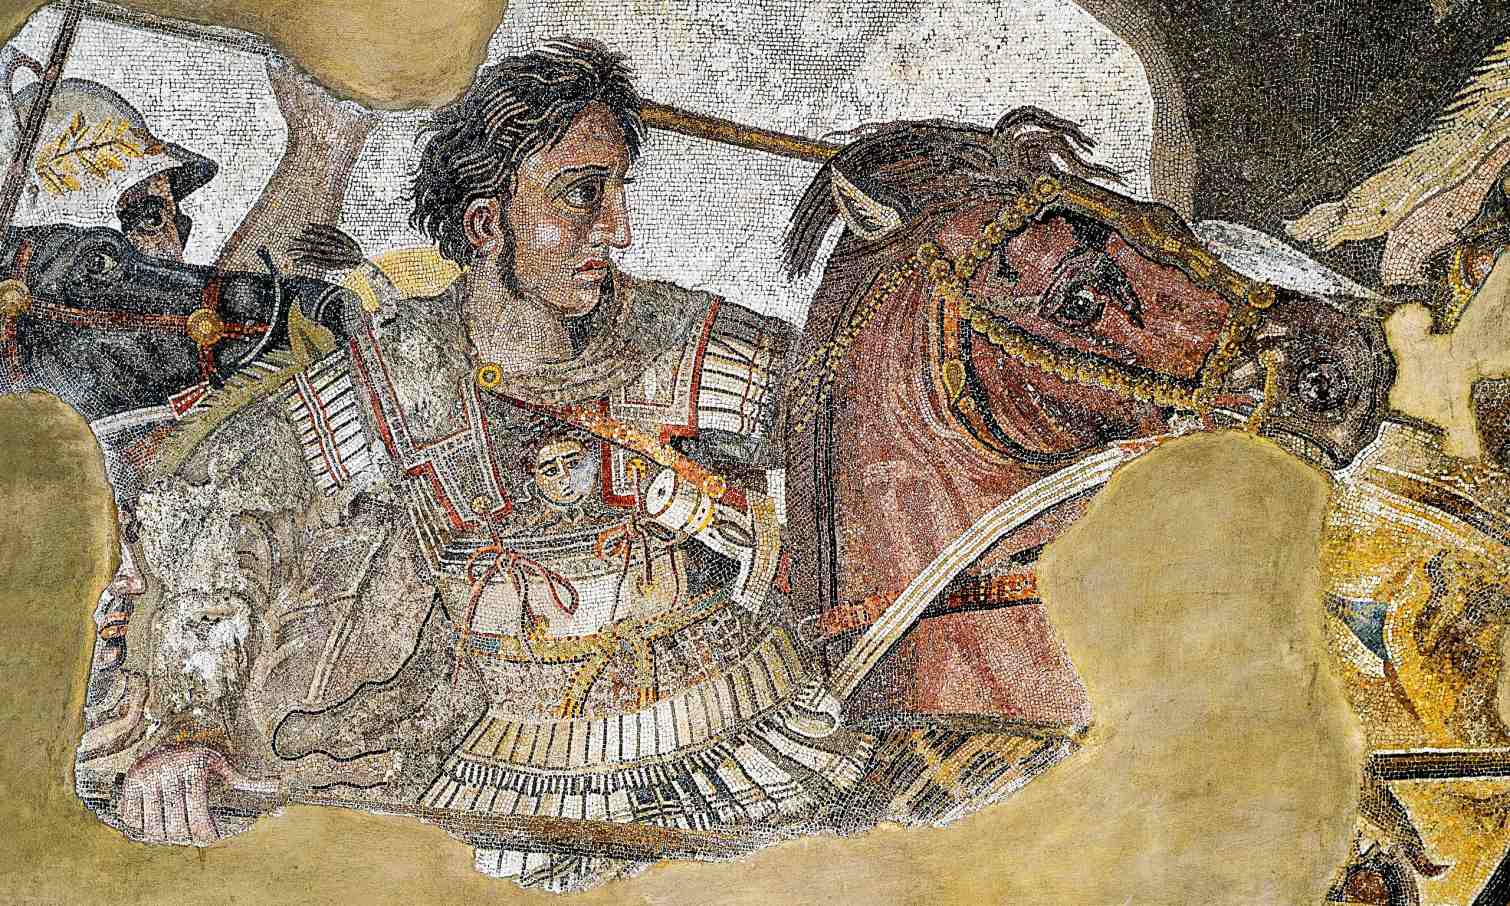 Kwam Alexander de Grote een 'draak' tegen in India? 2